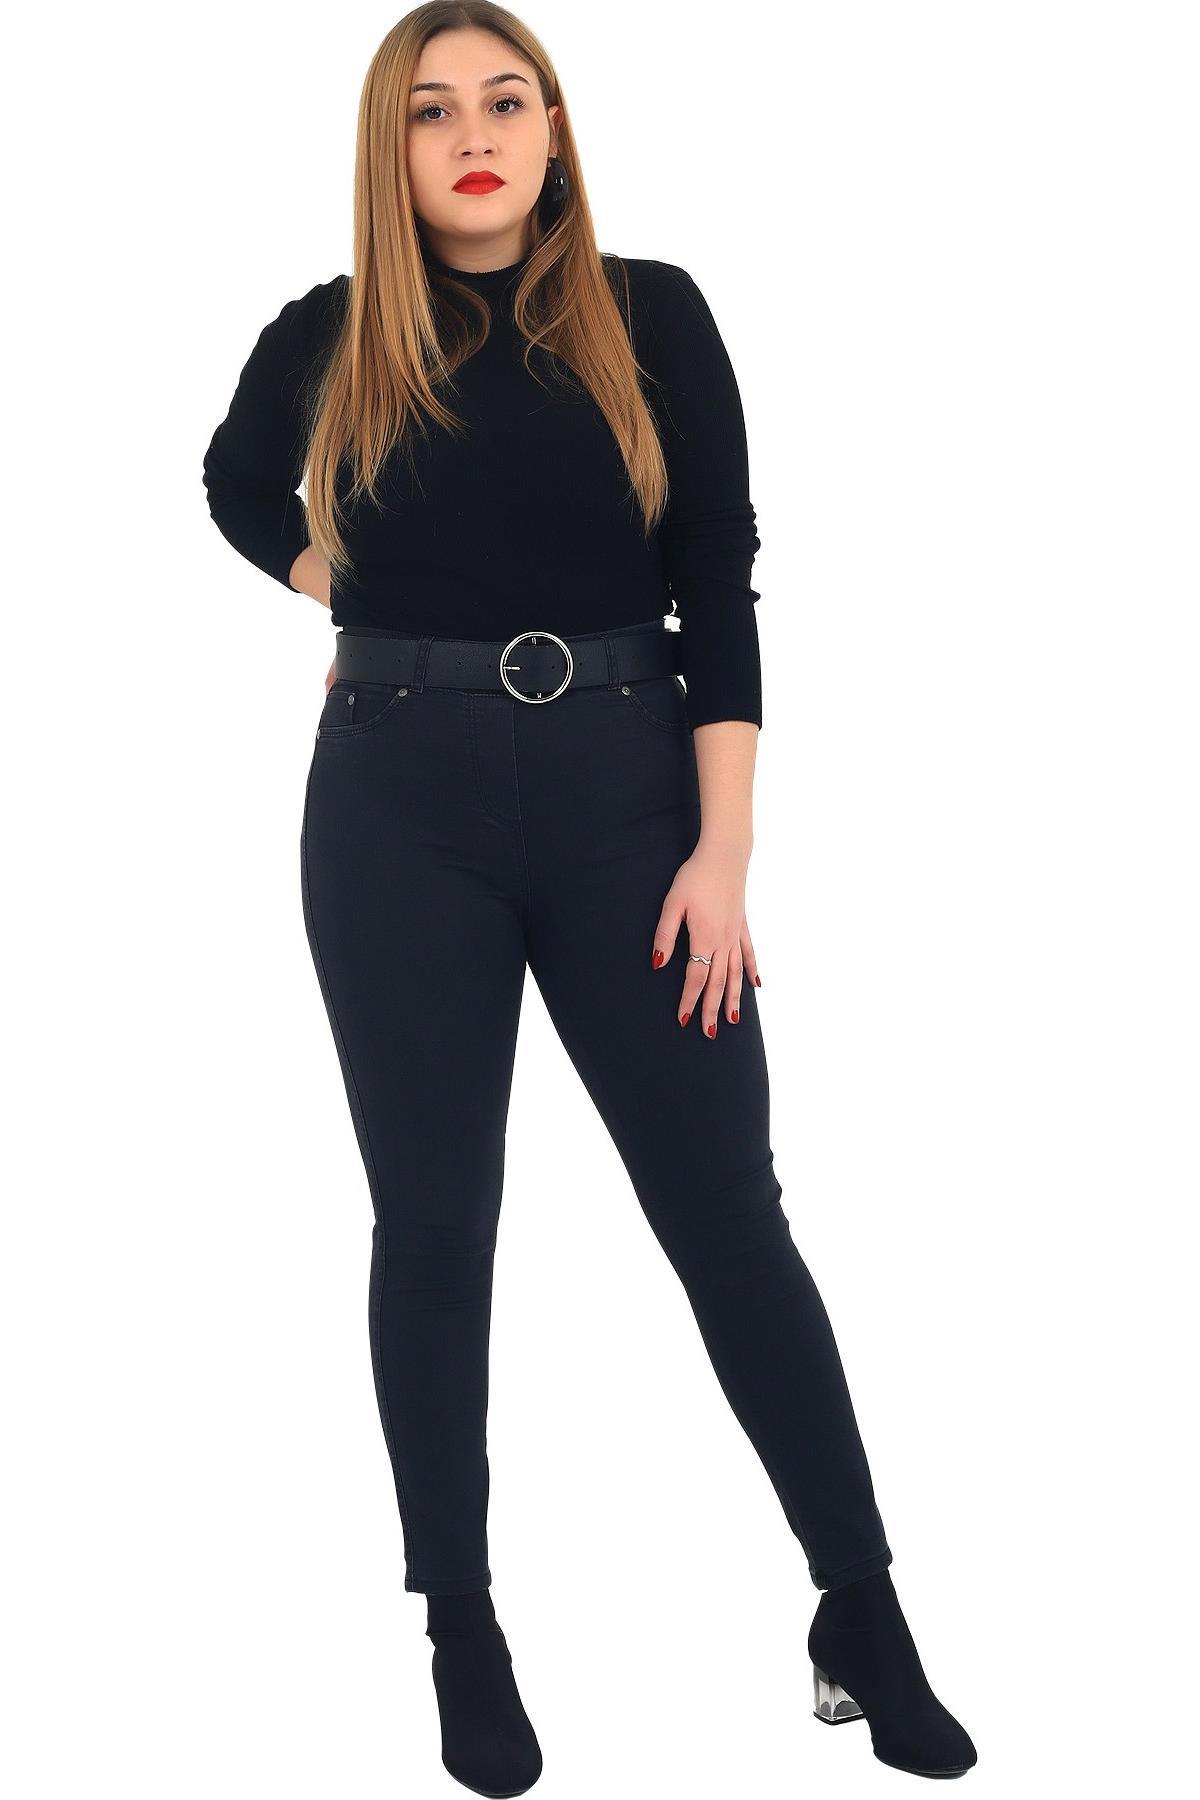 Fierte Kadın Büyük Beden Pantolon HnzPT252 Kadife Siyah Büyük Beden Alt Giyim